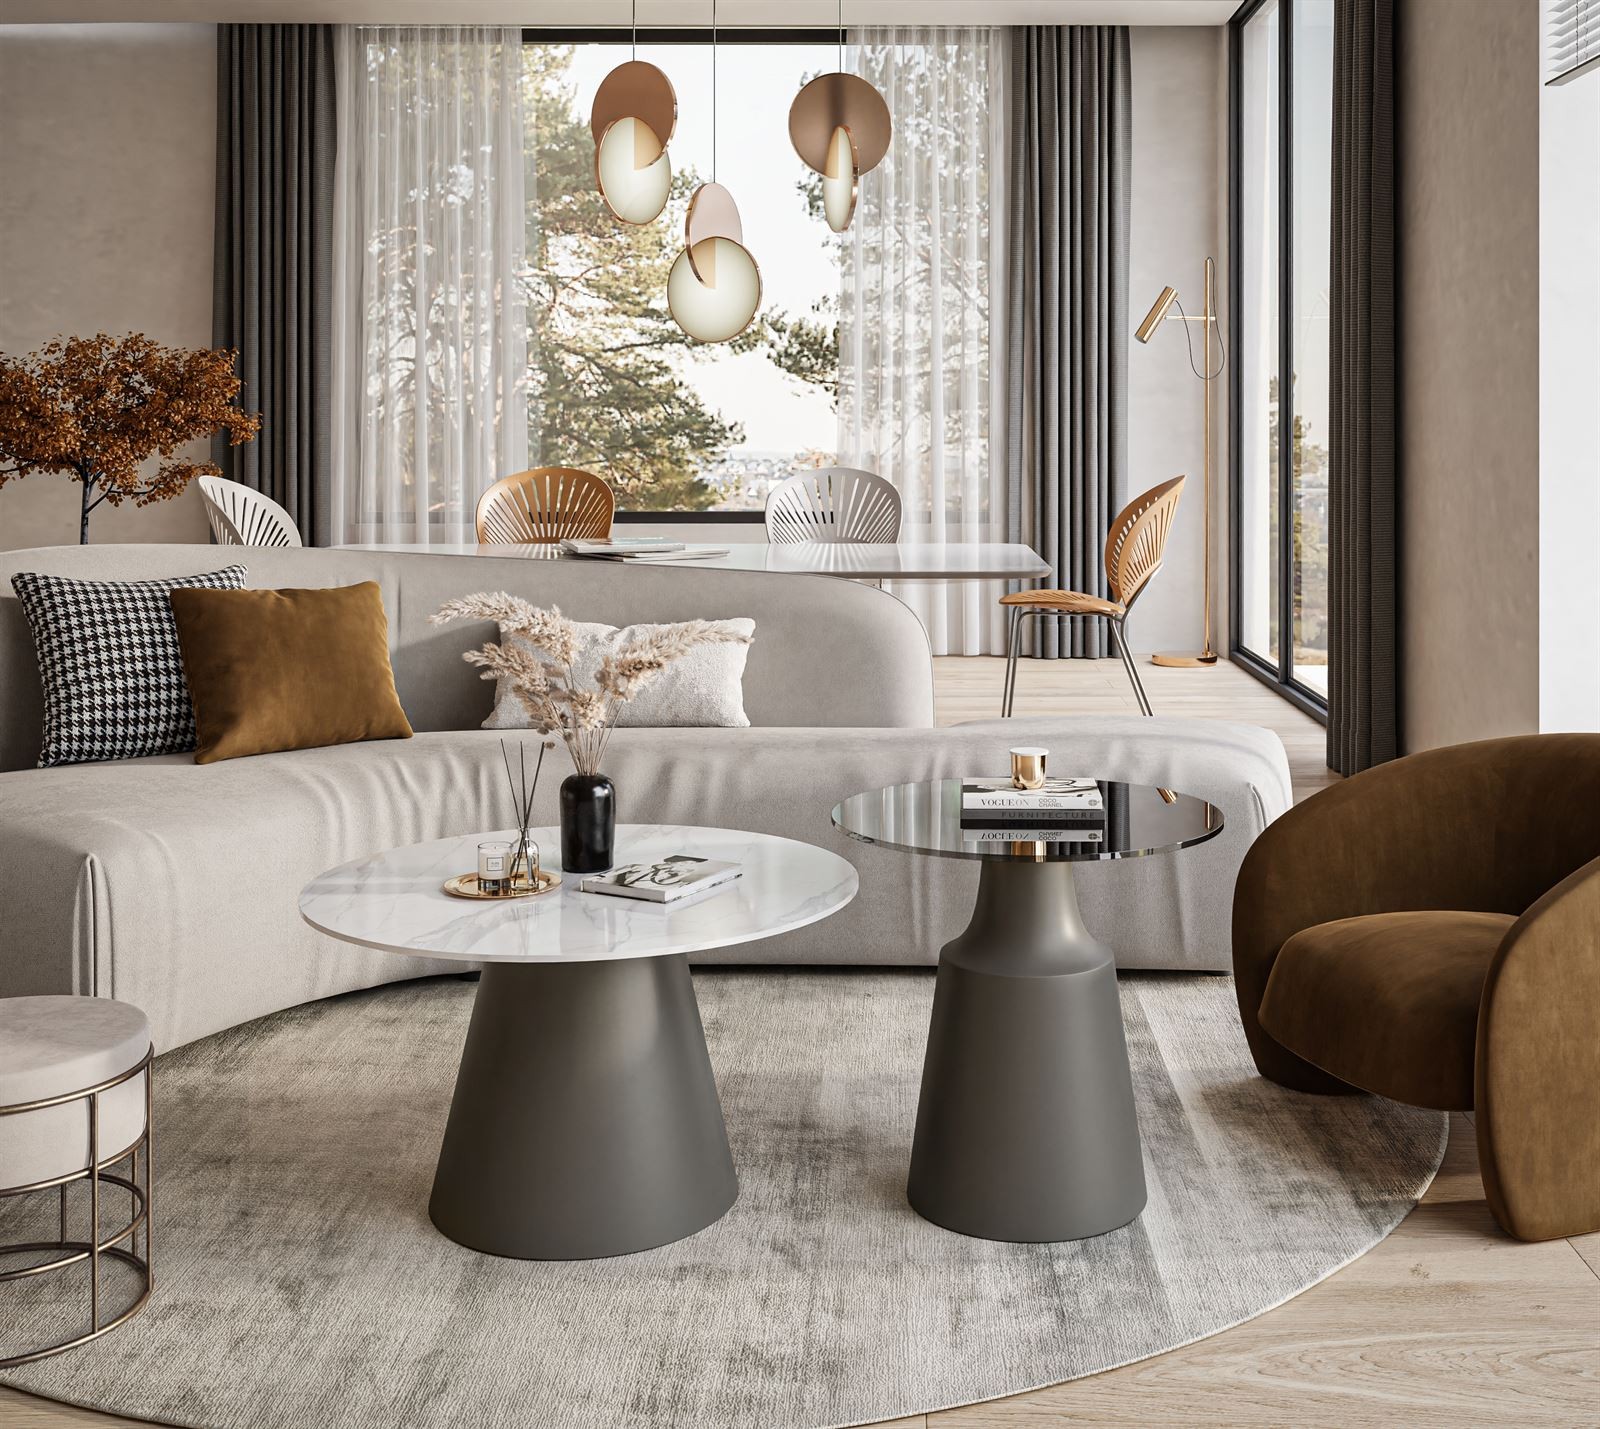 Runder Beistelltisch im Wohnzimmerdesign: Eleganter Tisch für Sofa und mehr